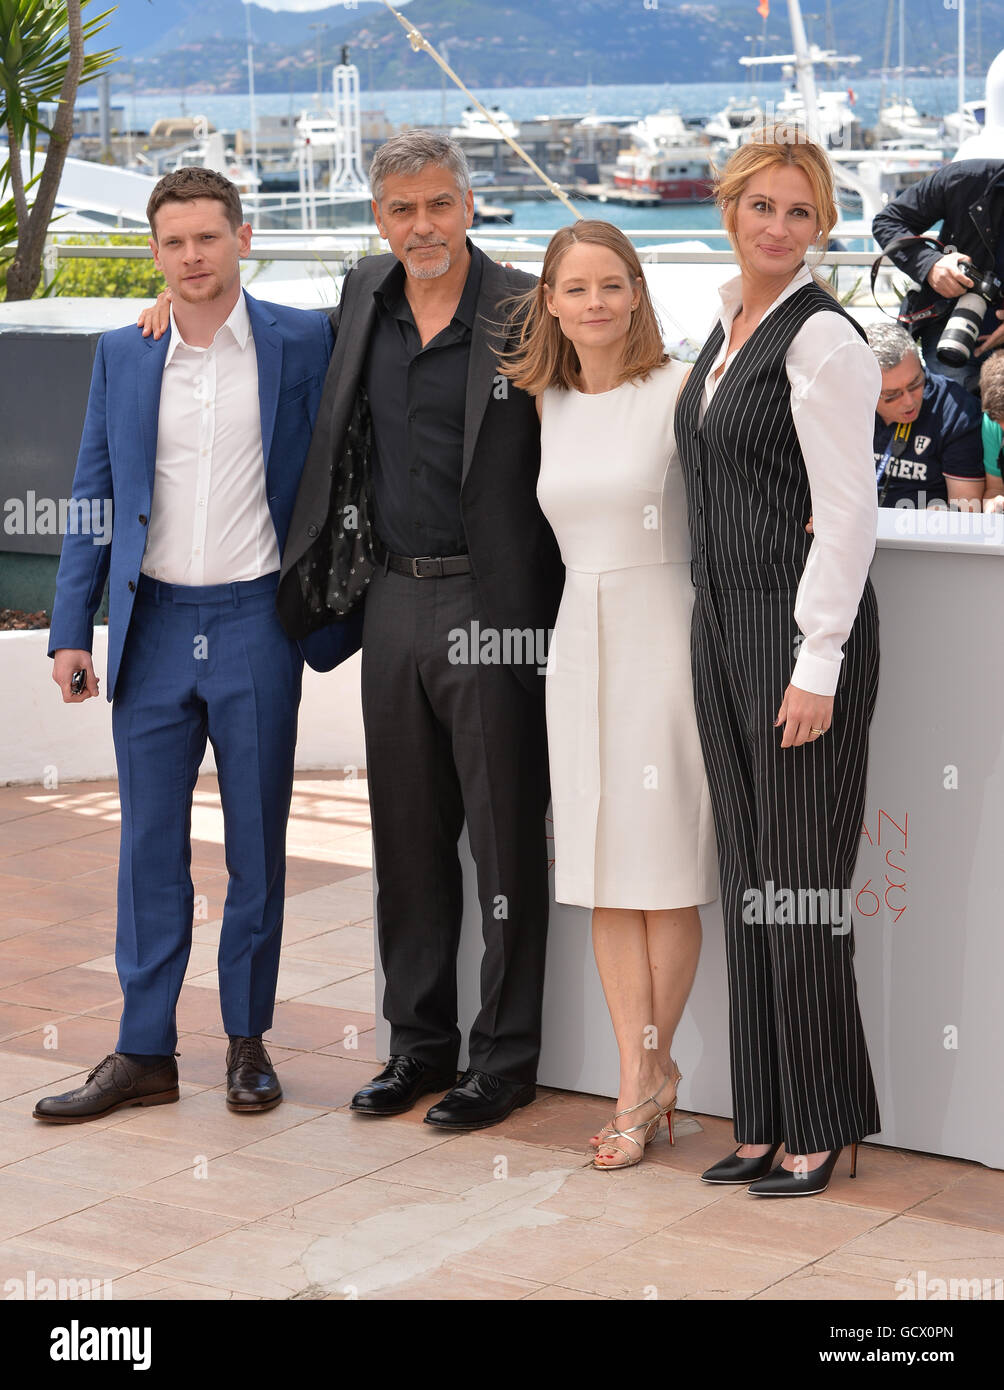 CANNES, FR - 12. Mai 2016: Schauspielerin/Regisseurin Jodie Foster & Schauspieler Jack O' Connell, George Clooney & Julia Roberts bei der Fototermin für "Geld Monster" auf dem 69. Festival de Cannes. Stockfoto